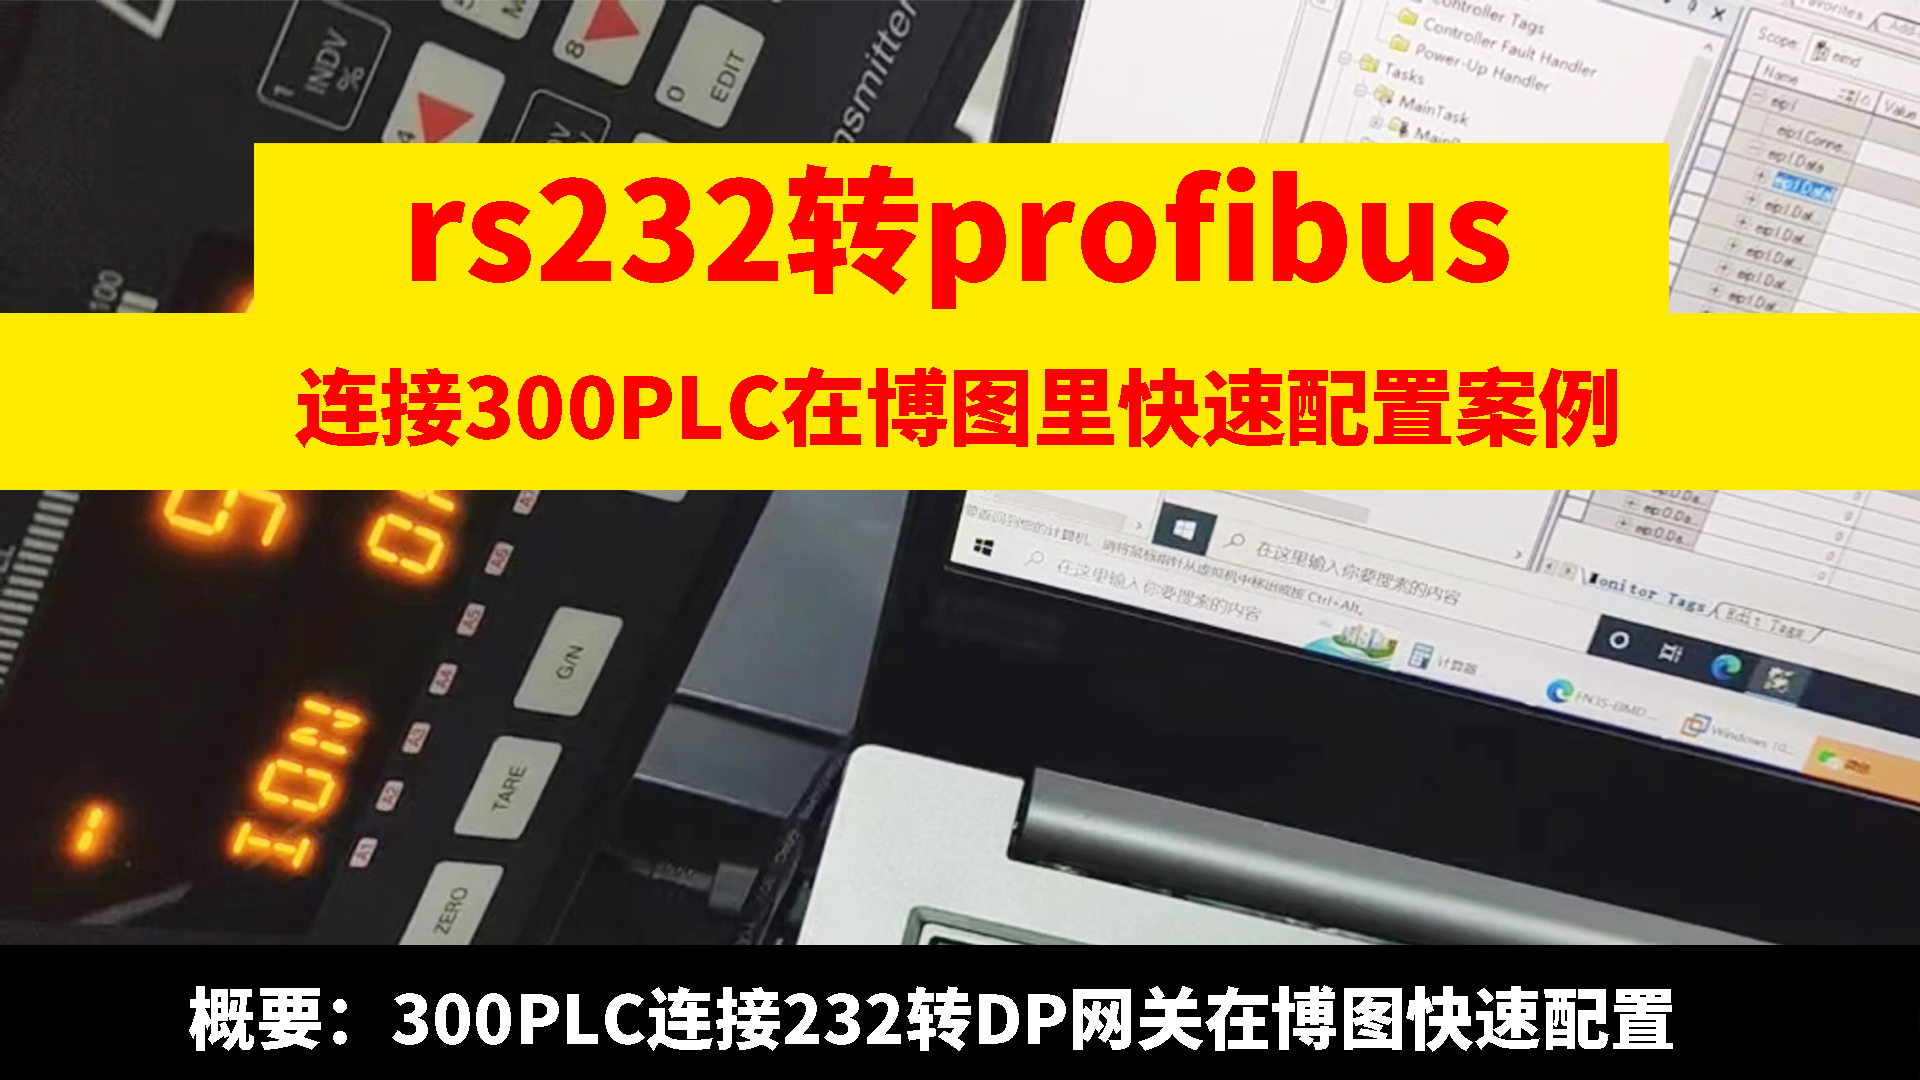 RS232轉profibus網關連接300PLC在博圖里快速配置#產品方案 #興達易控 